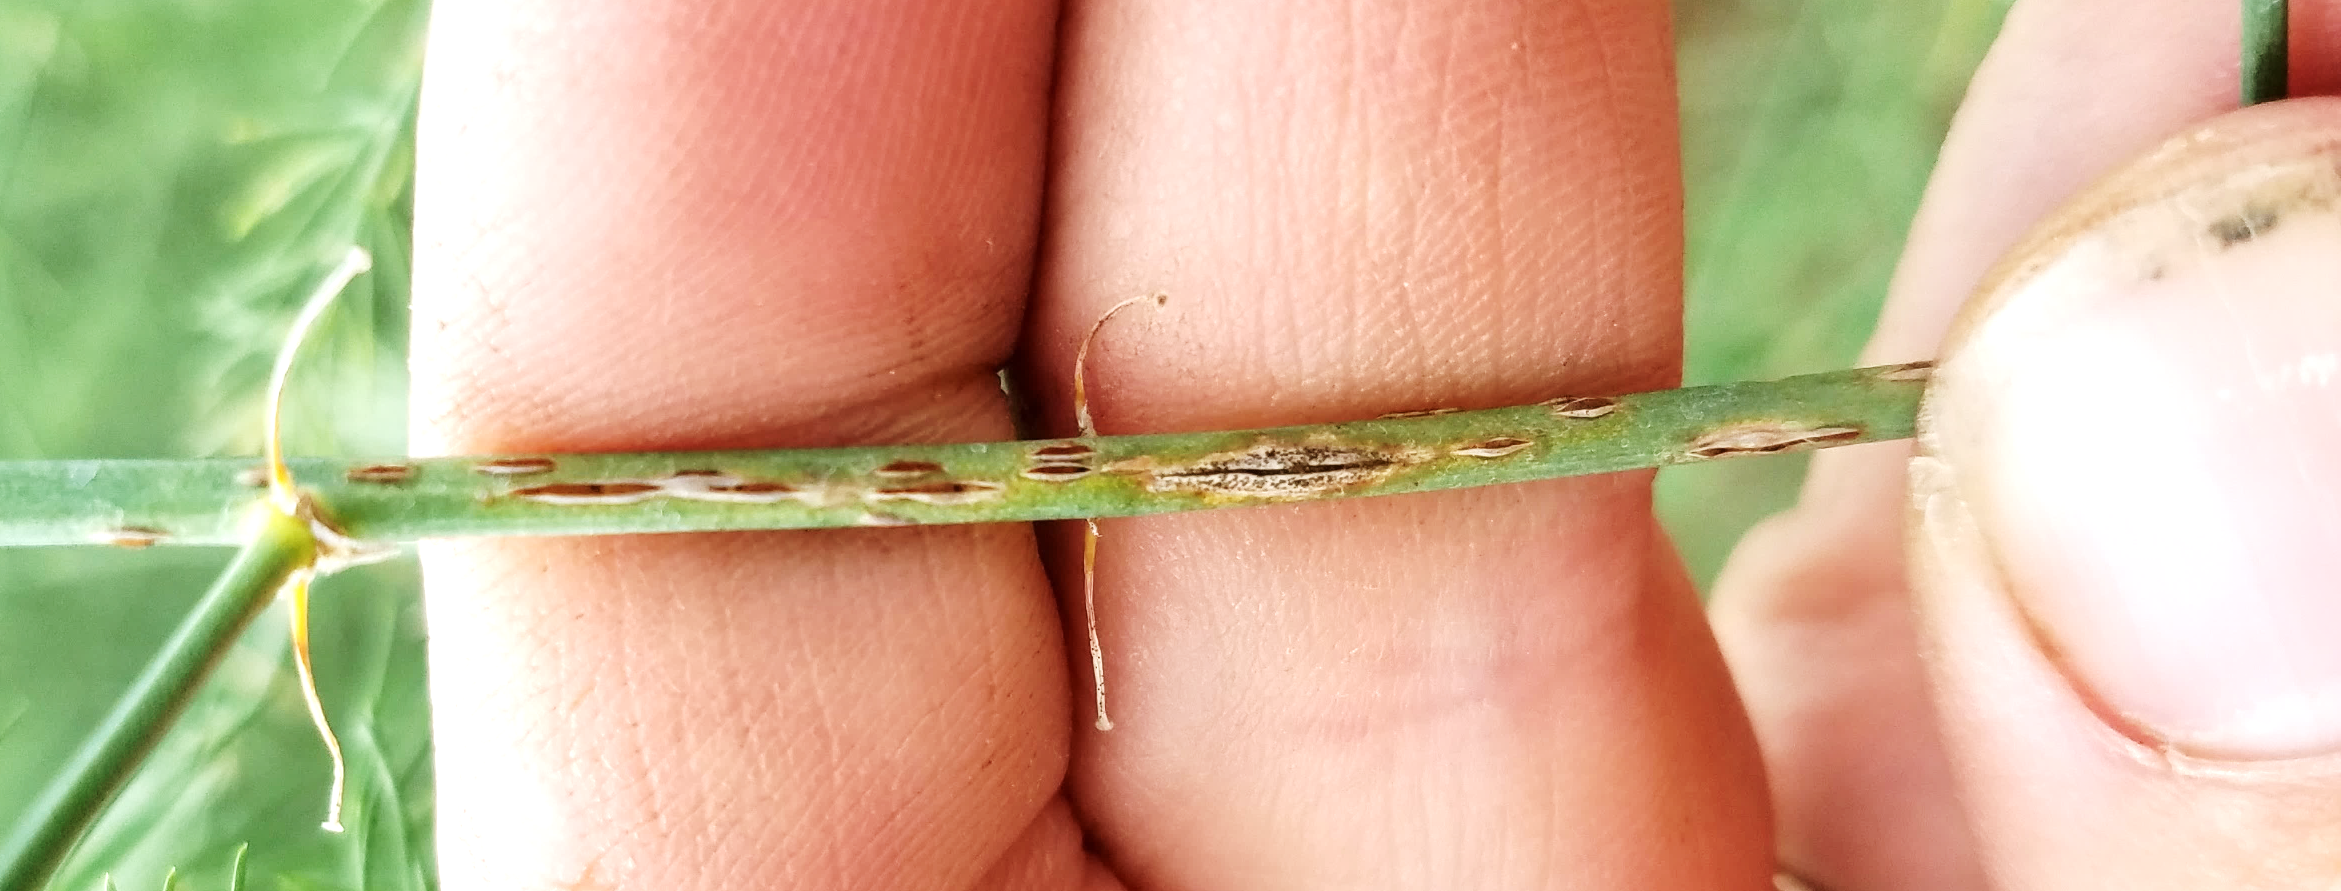 Rust markings on asparagus stem.